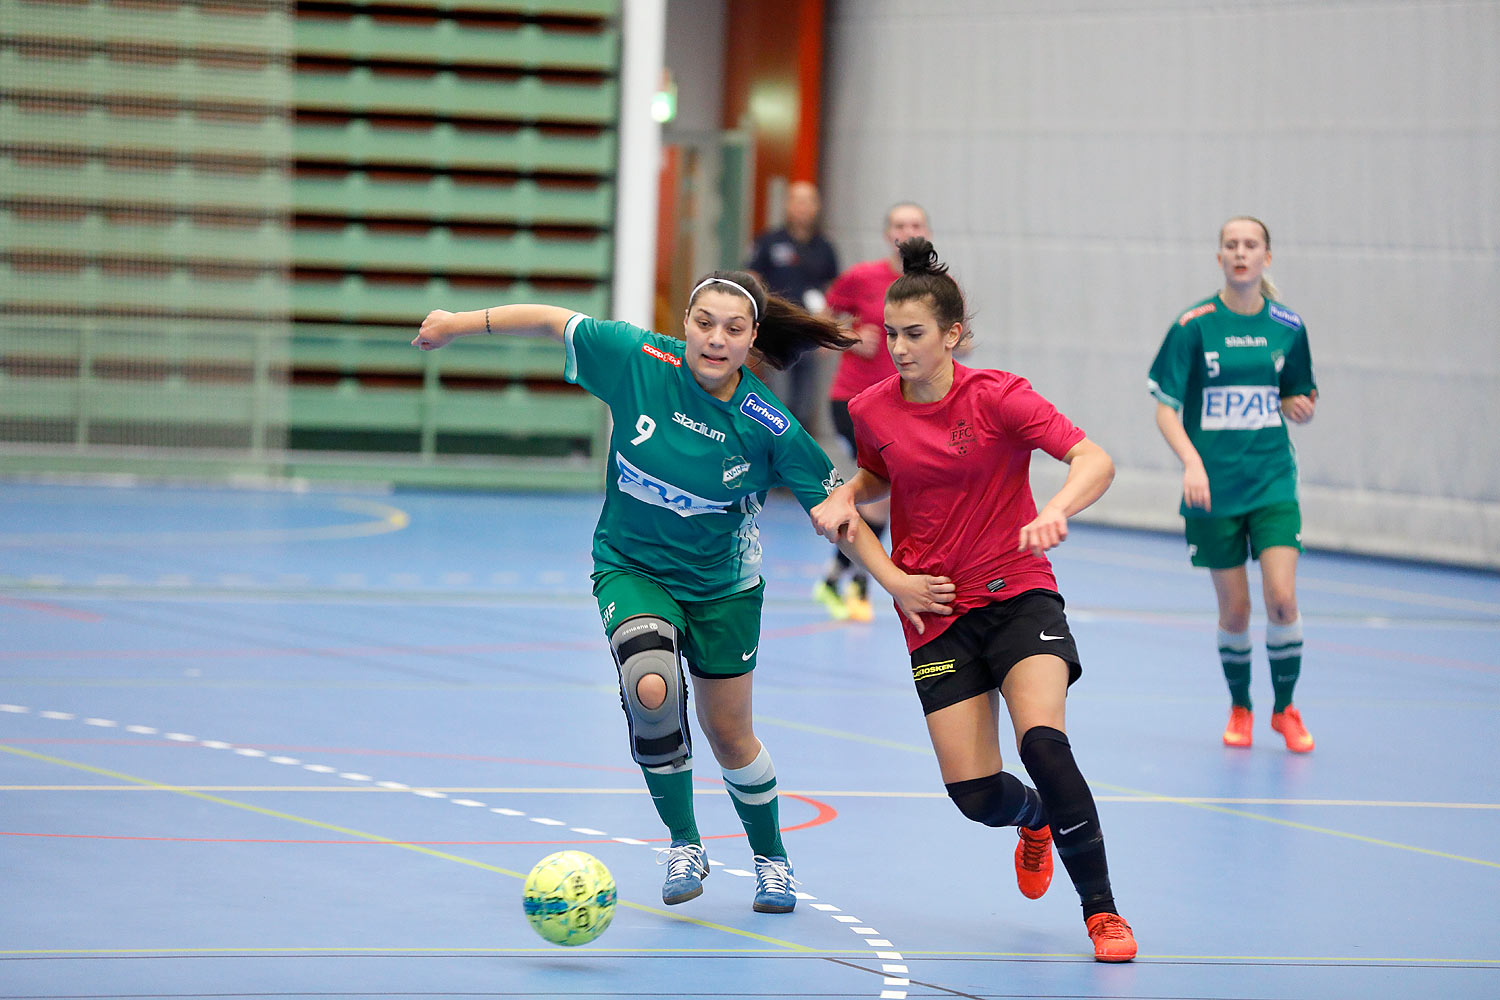 Skövde Futsalcup Damer Falköping Futsal Club-Våmbs IF,dam,Arena Skövde,Skövde,Sverige,Skövde Futsalcup 2016,Futsal,2016,141844